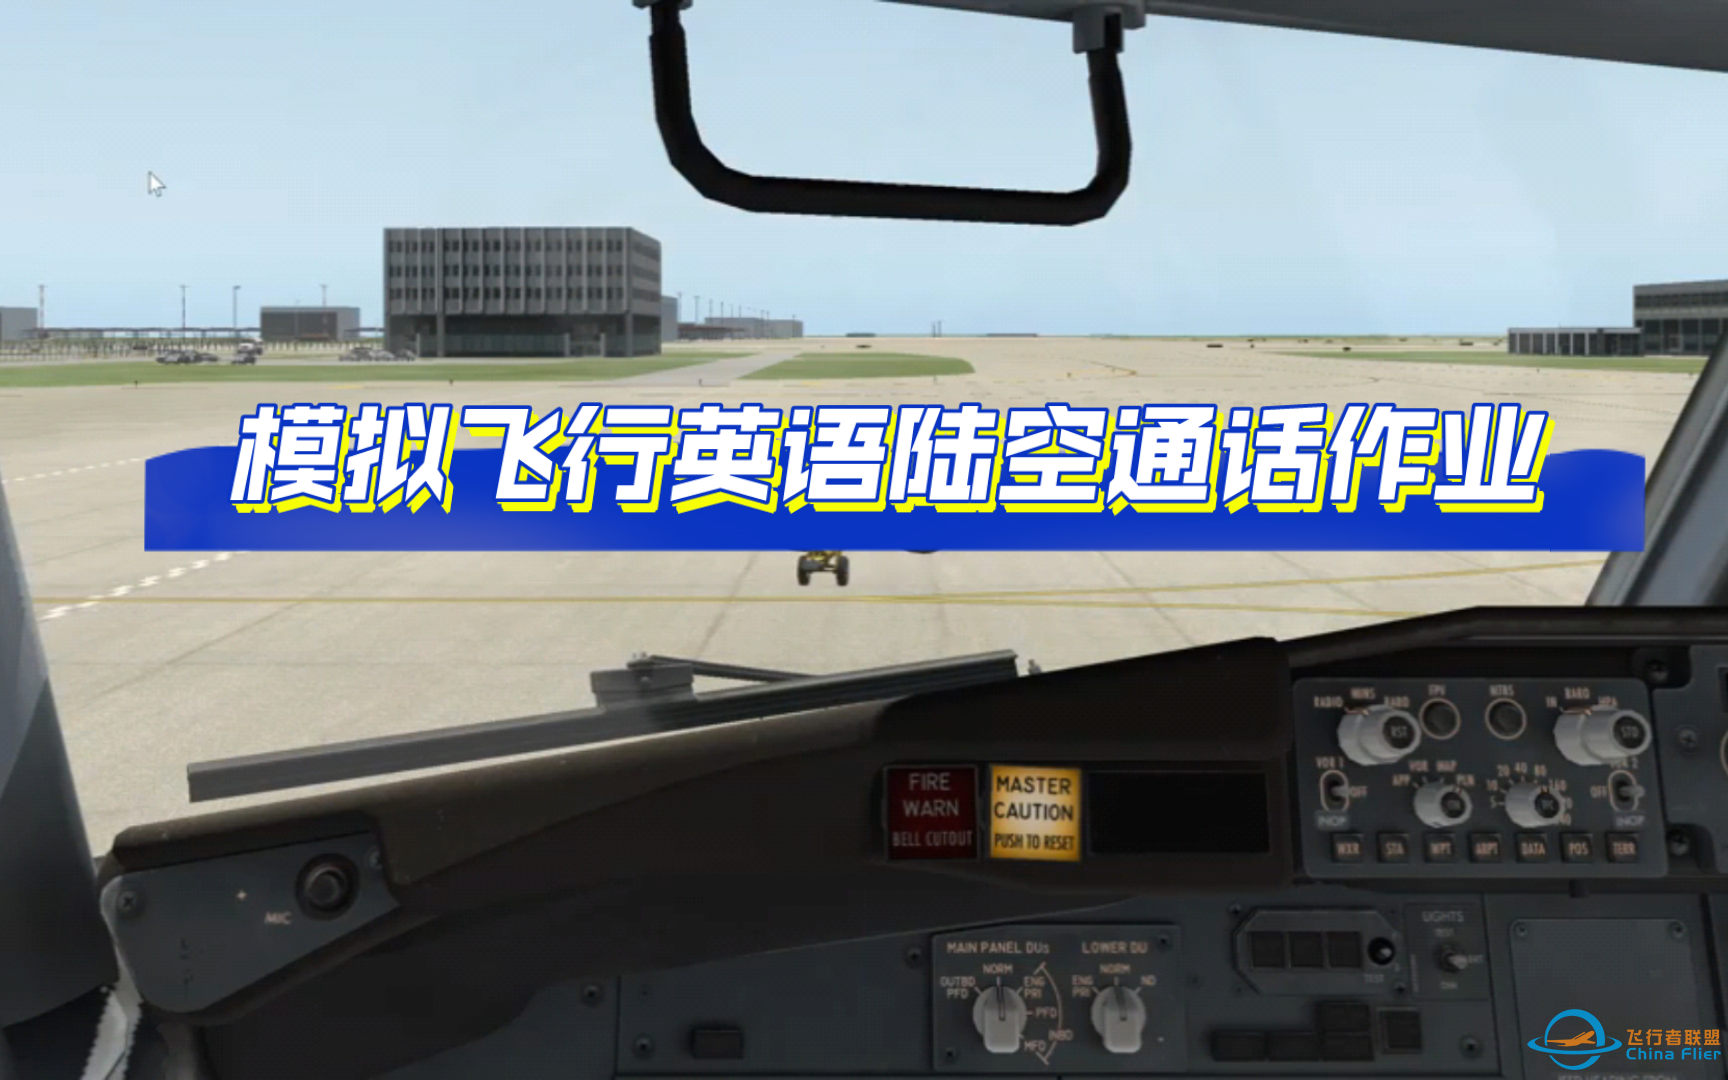 【飞行模拟英语陆空通话作业】Xplane飞行模拟陆空通话：ATIS-Line up-1729 